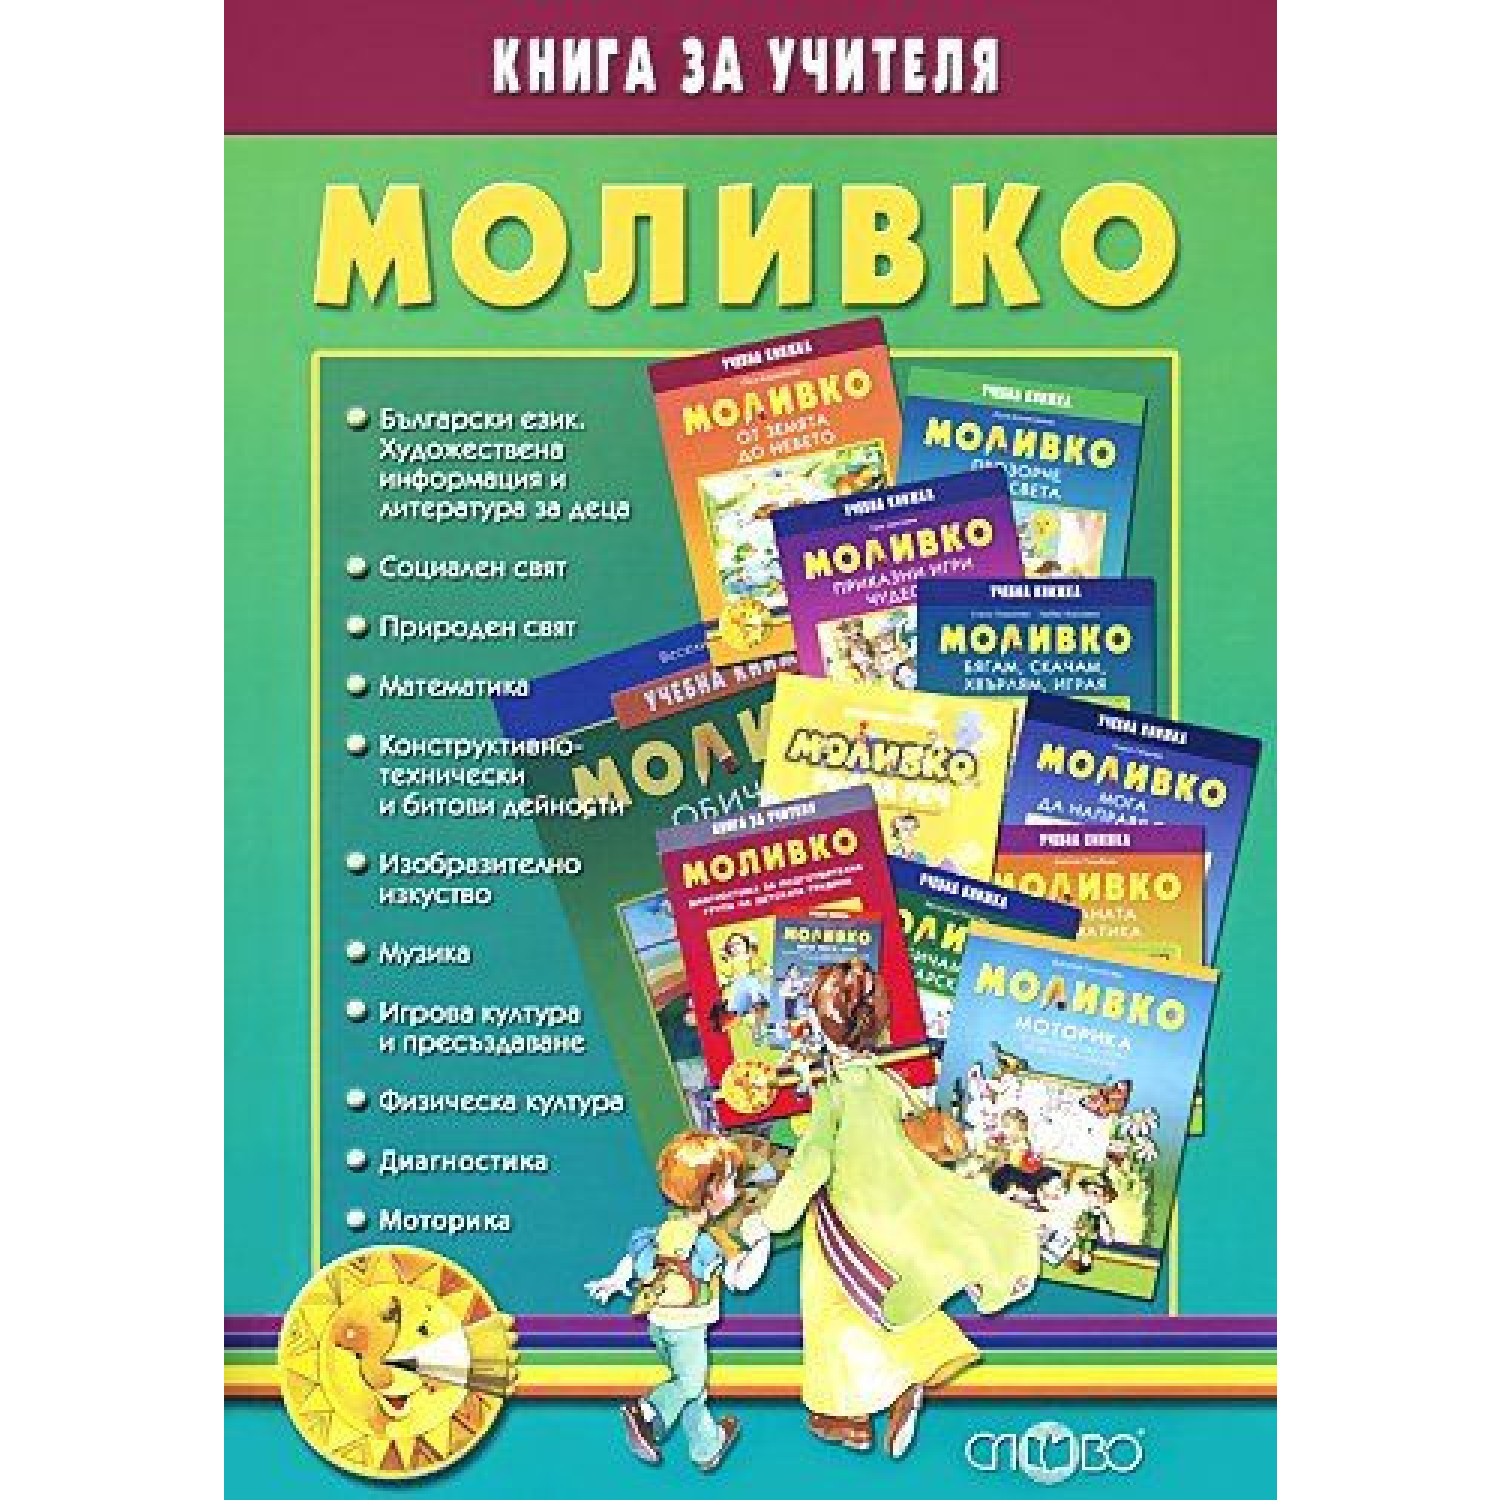 Моливко - Книга за учителя. Дидактична система за подготвителна група в детската градина (6-7 г.) по всички образователни направления, диагностика и моторика